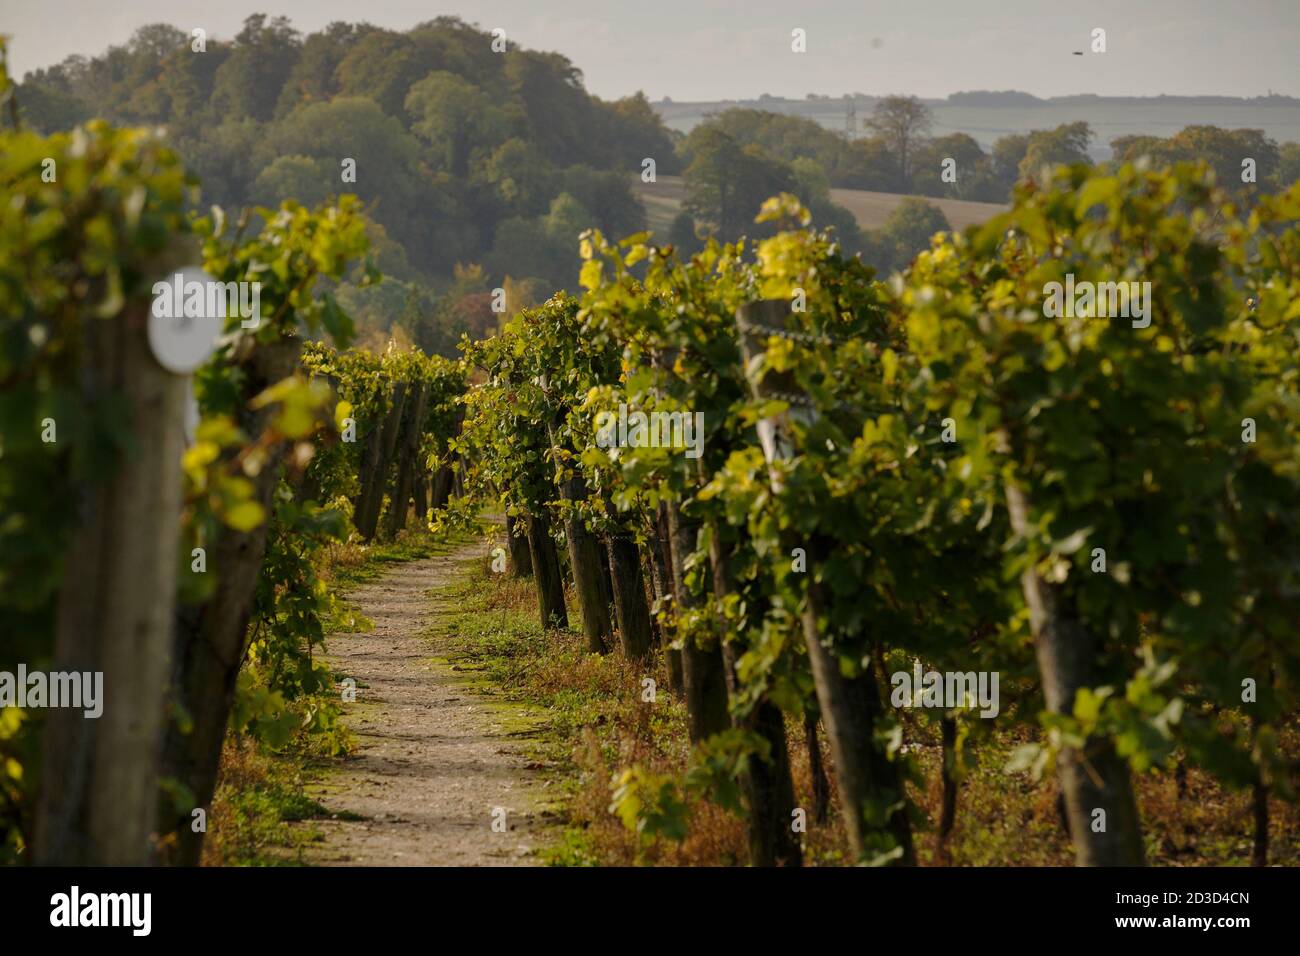 Récolte de raisins Chardonnay au vignoble et domaine de Hambledon, Hampshire, Royaume-Uni le mercredi 7 octobre 2020. Hambledon a 100,00 vignes établies situé o Banque D'Images